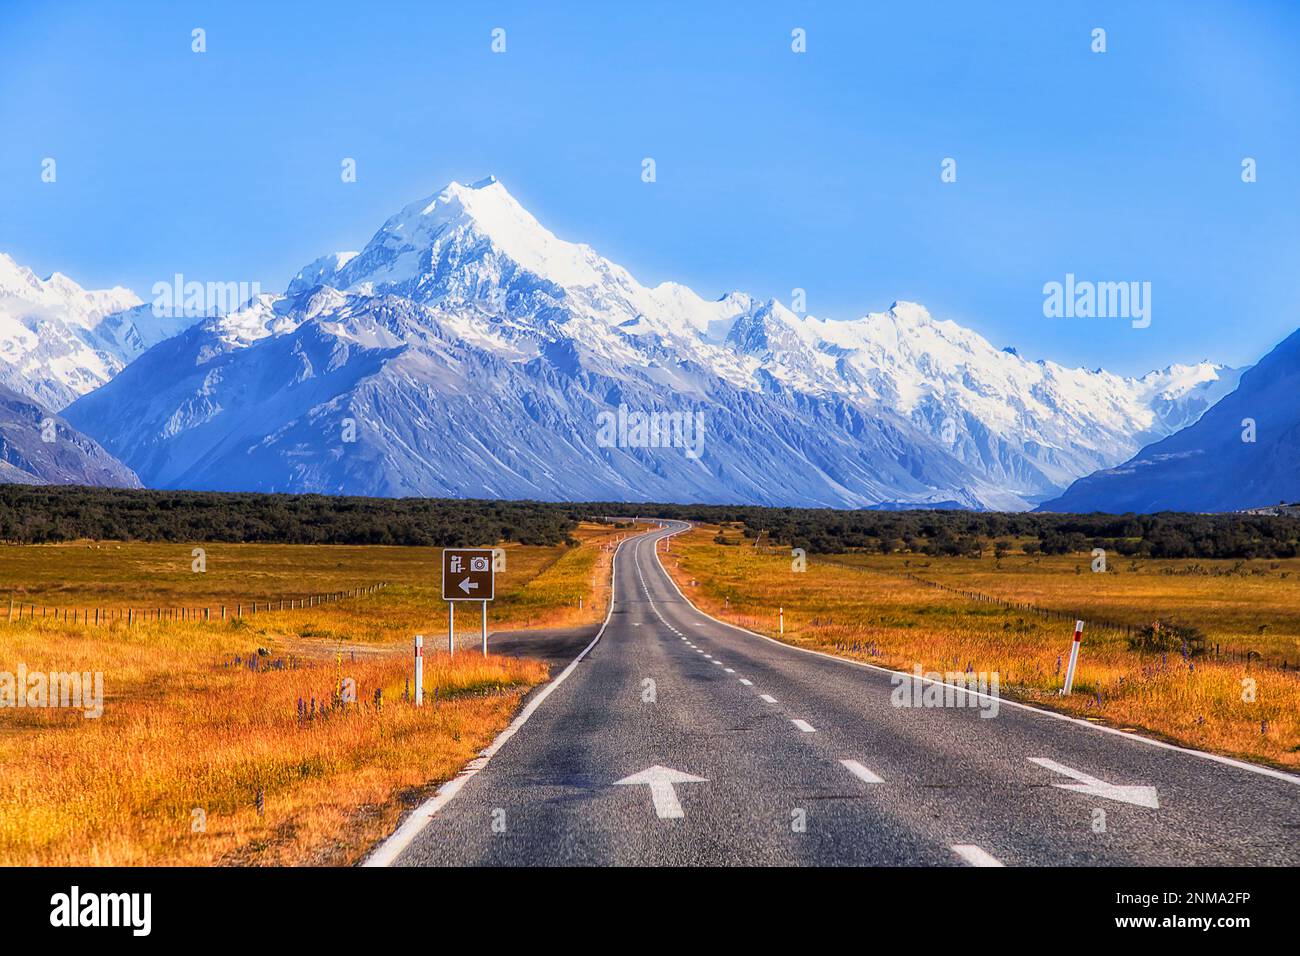 Highway 80 zum Mt. Cook im Tasman-Tal von Neuseeland - beliebtes Touristenziel des Nationalparks. Stockfoto